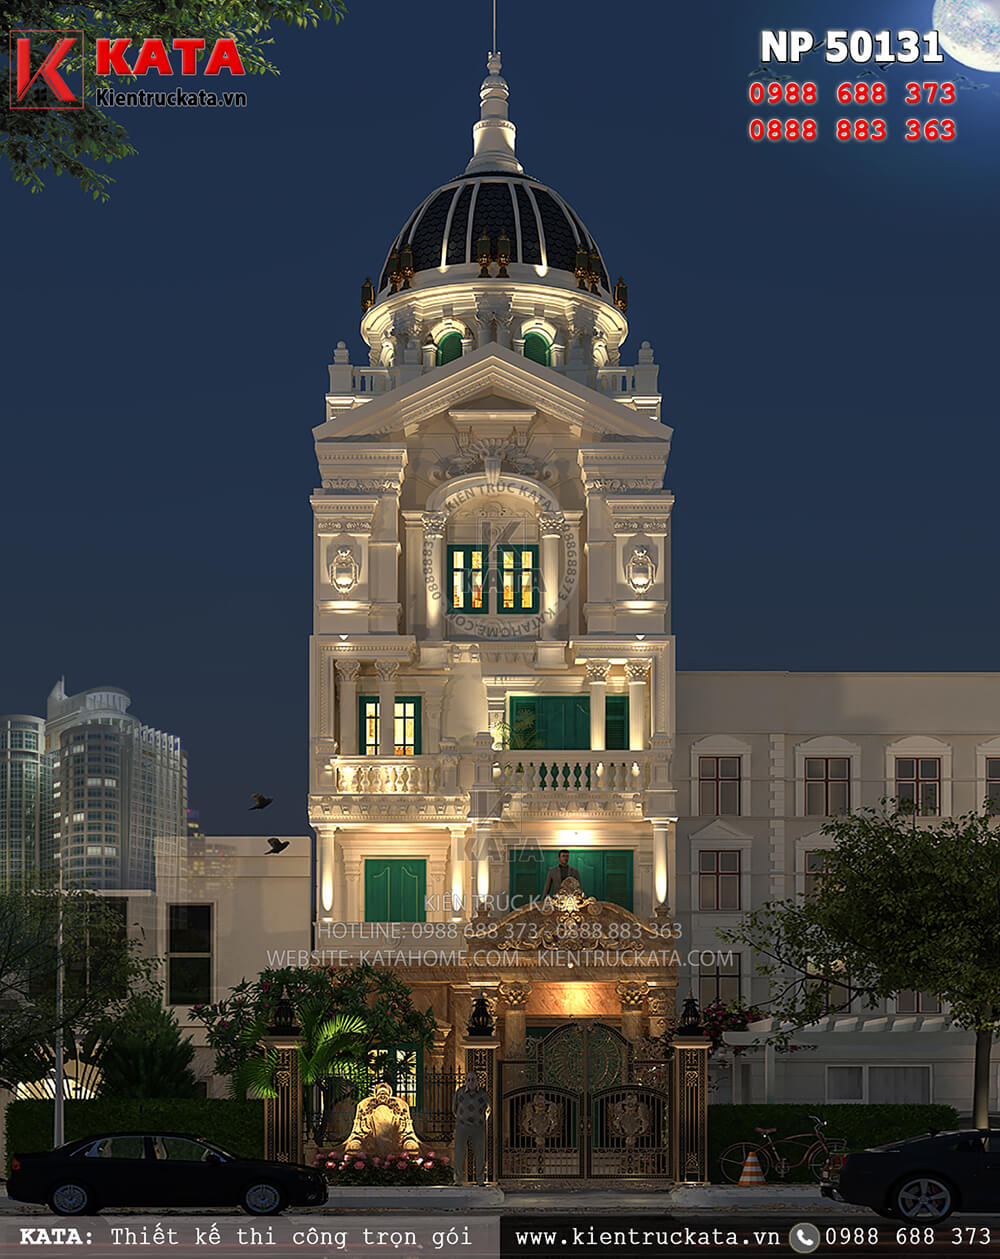 Biệt thự lâu đài phố 5 tầng kiến trúc tân cổ điển tại Hà Nội về đêm